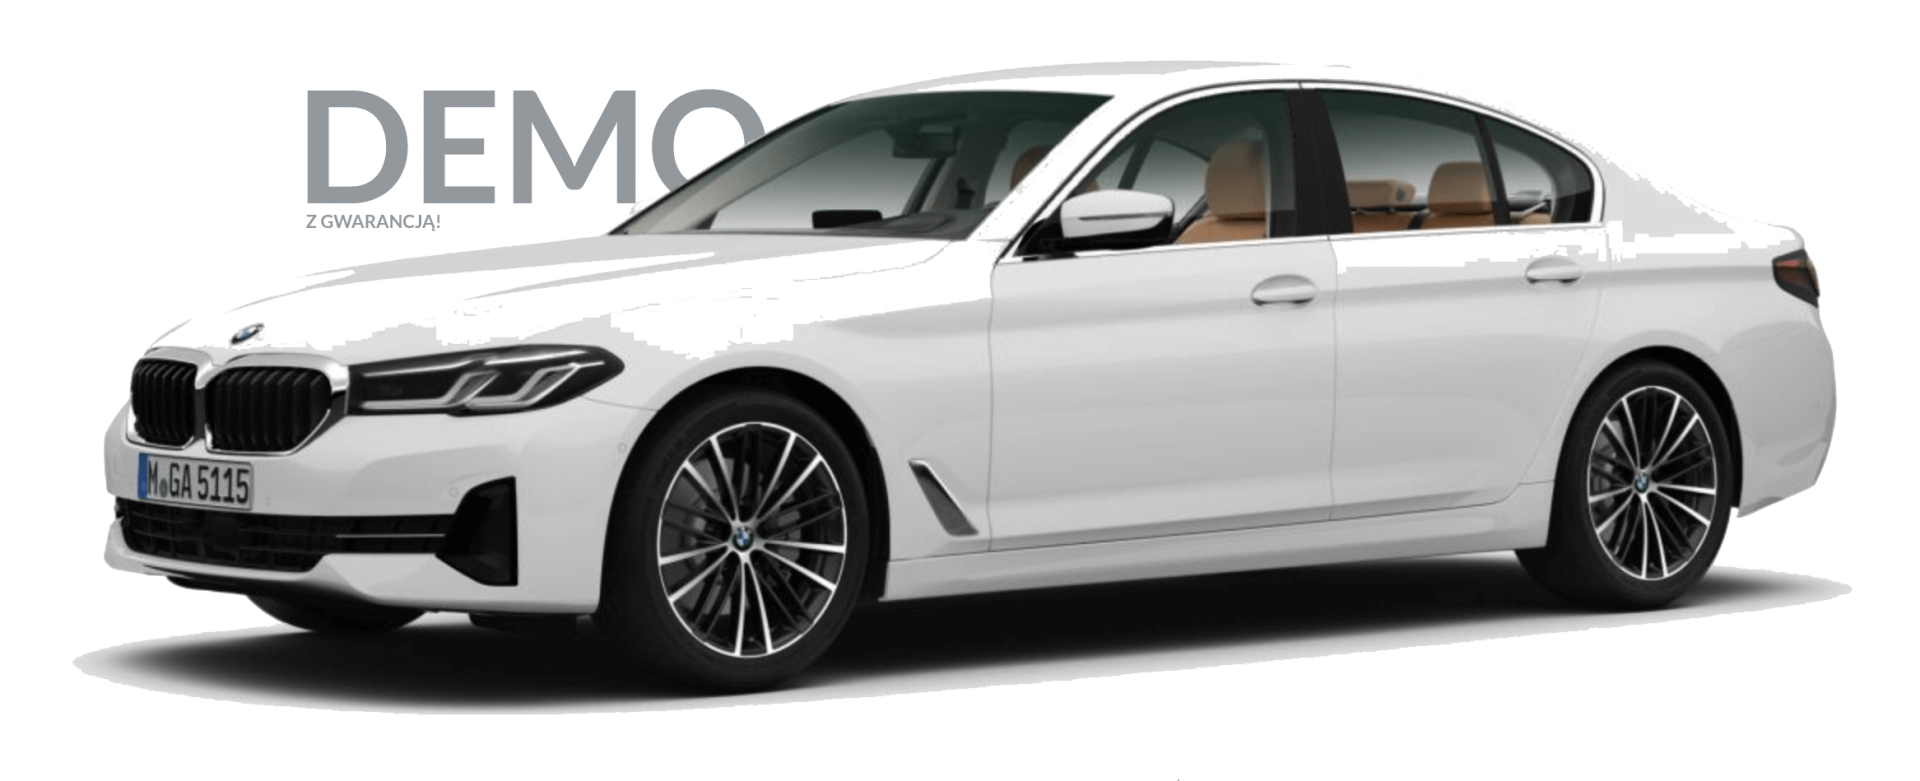 Kingsman Wirtualny Salon Samochodowy BMW Serii 5